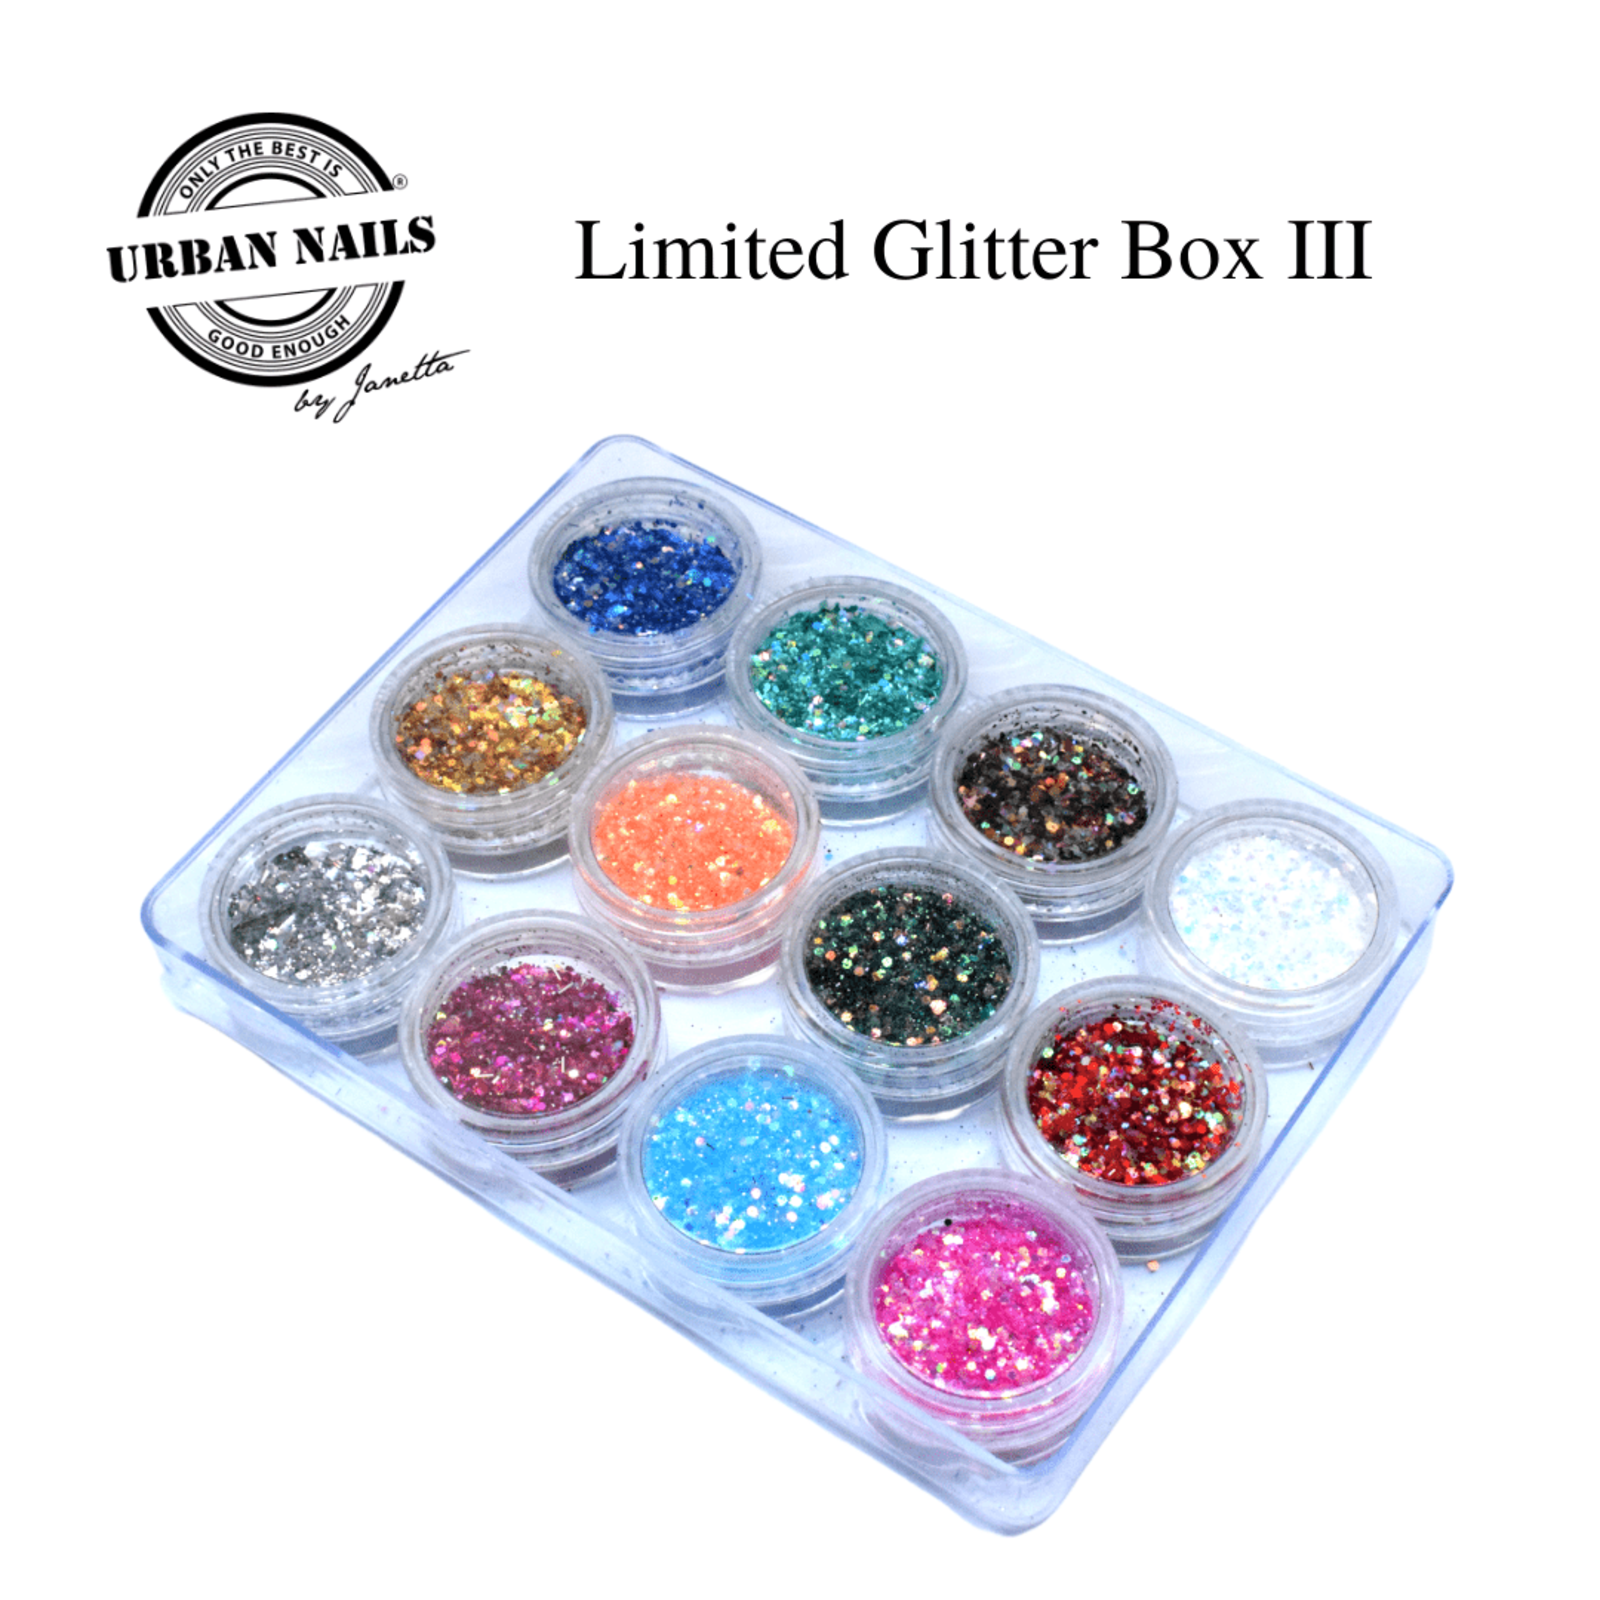 Urban nails Limited glitterbox lll